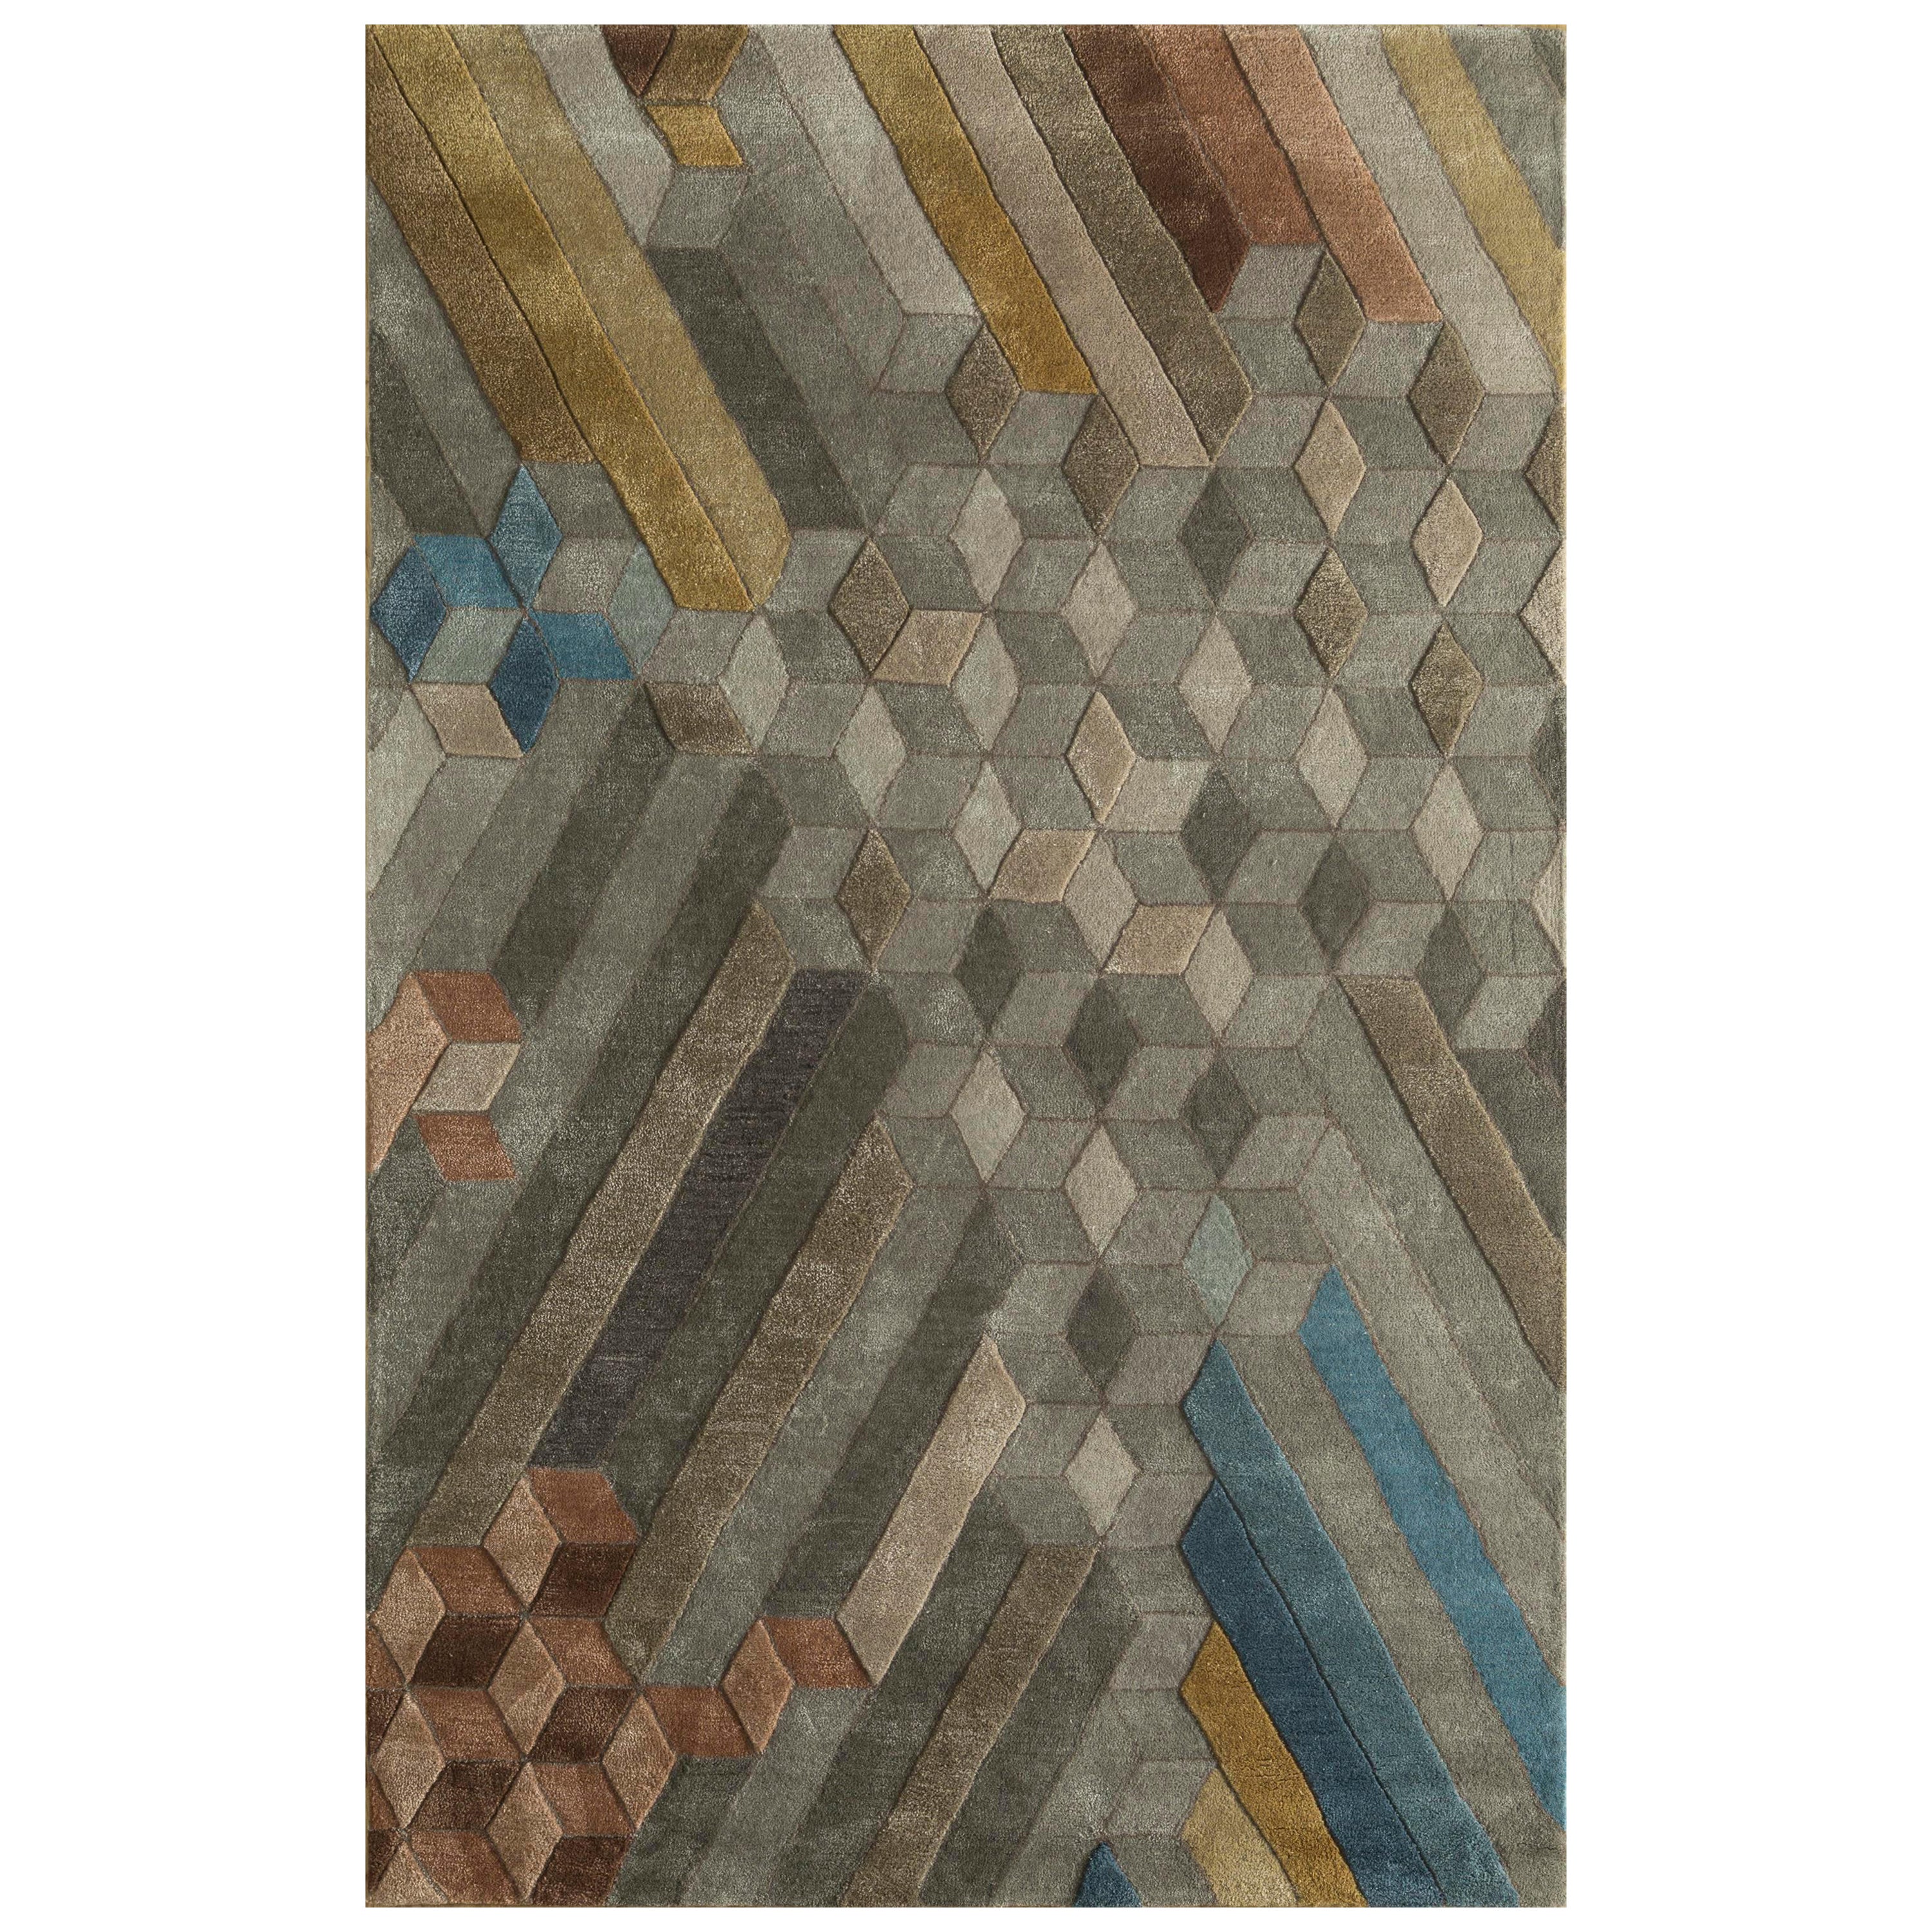 Tapis touffeté à la main Cubist Charm Classic Gray Apricot 180x270 cm